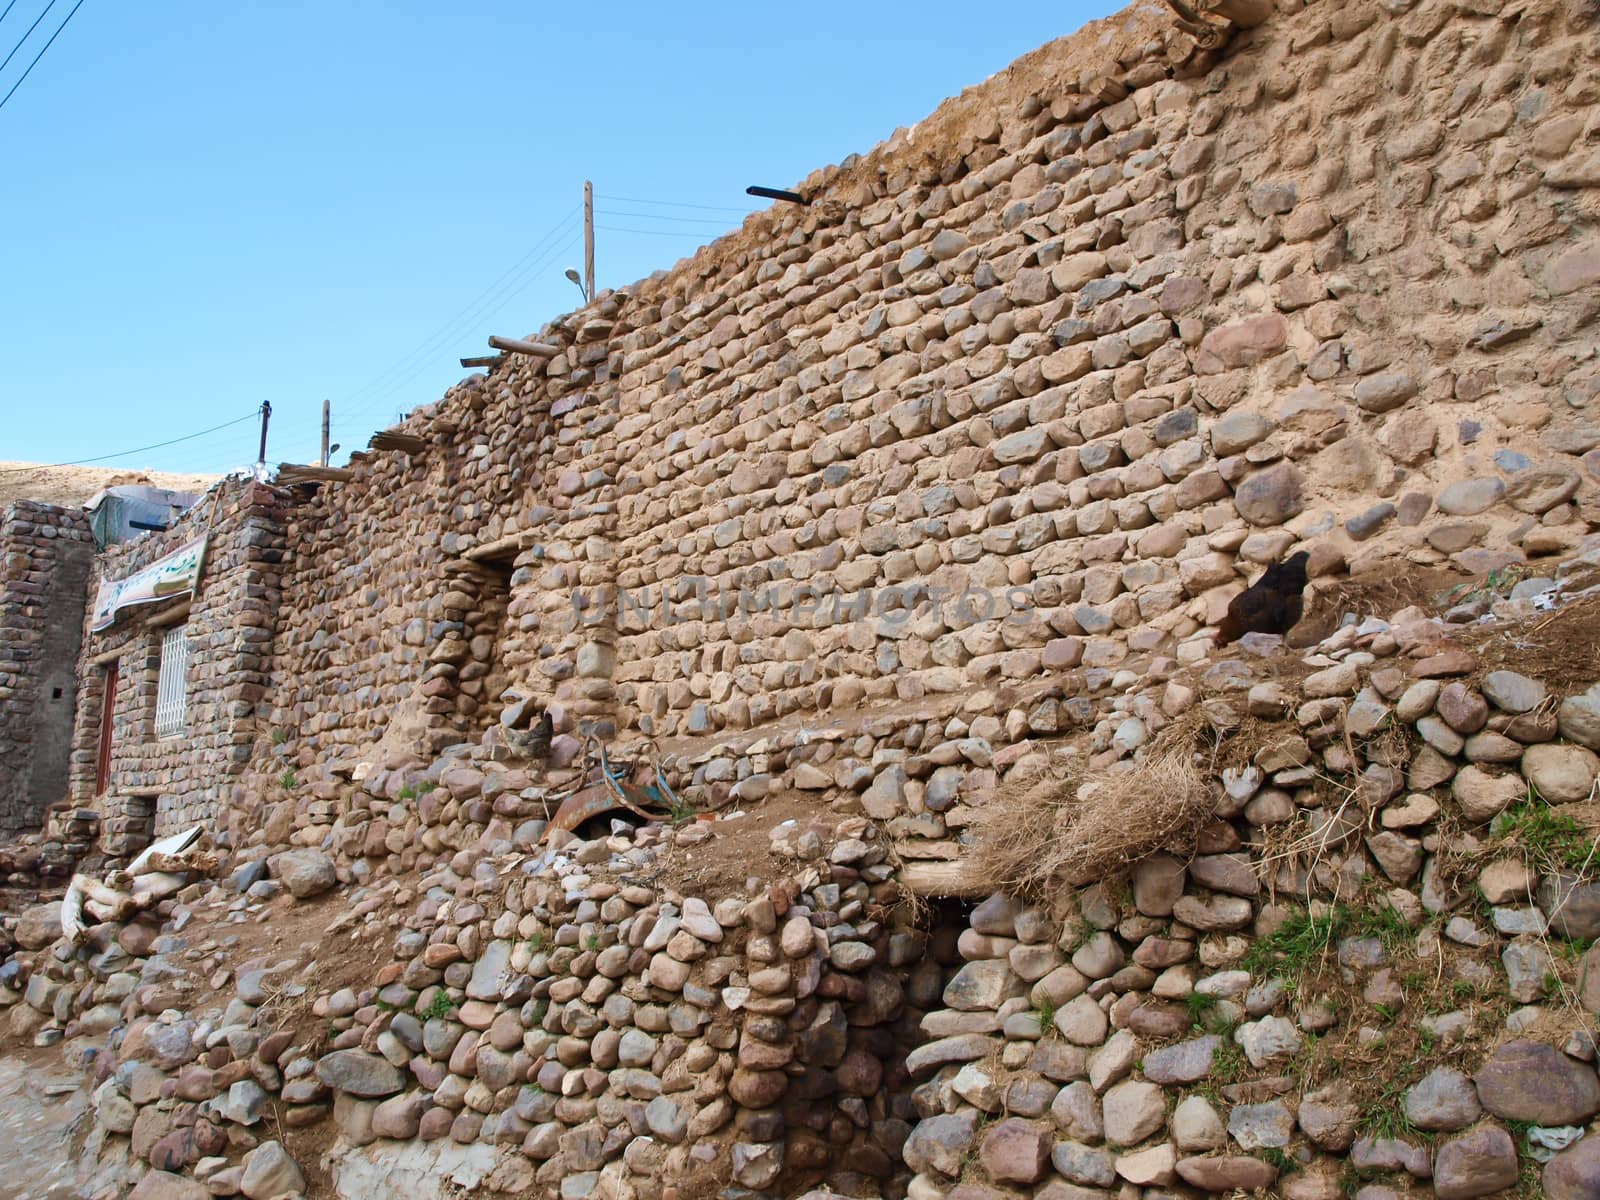 Brick-work in Kandovan village in Tabriz, Iran